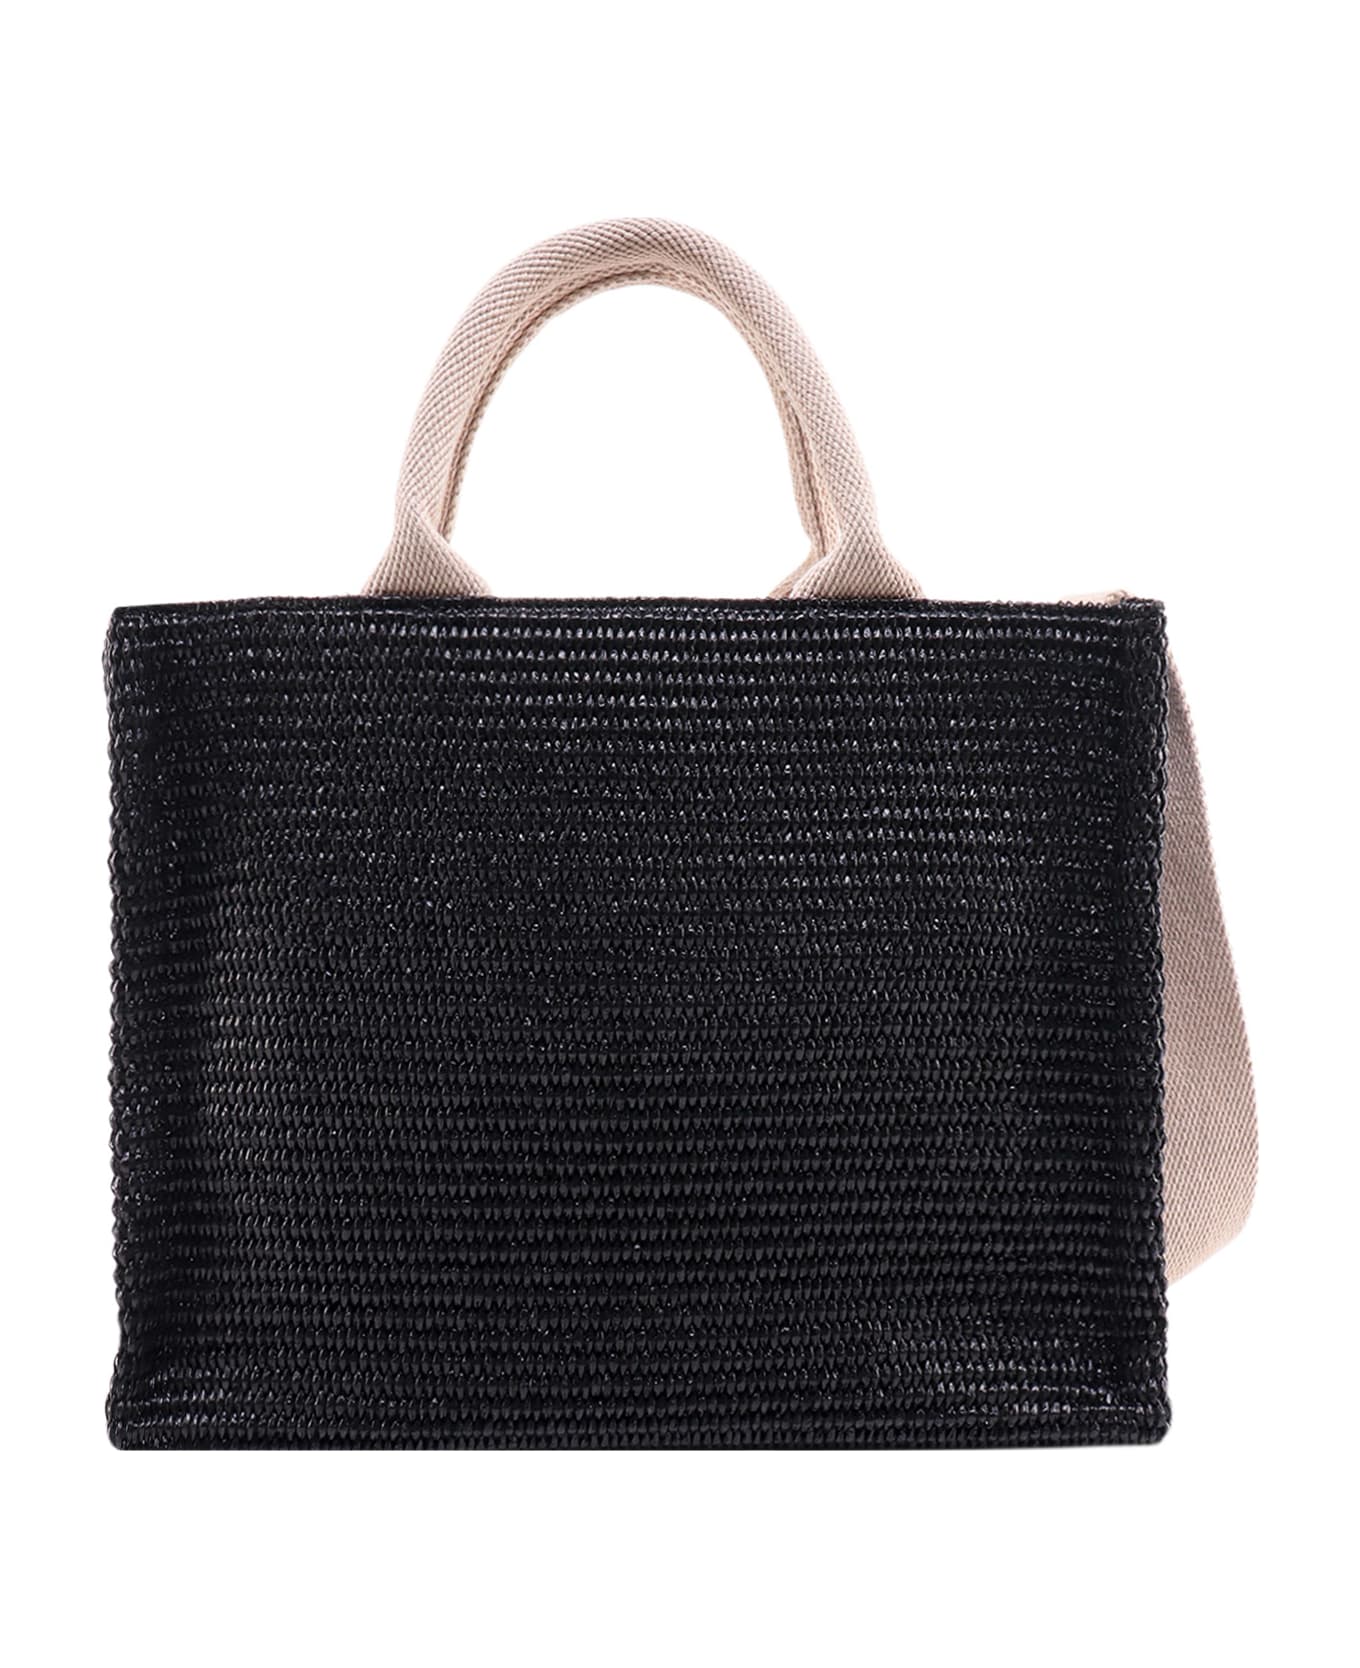 Marni Handbag Marni - BLACK